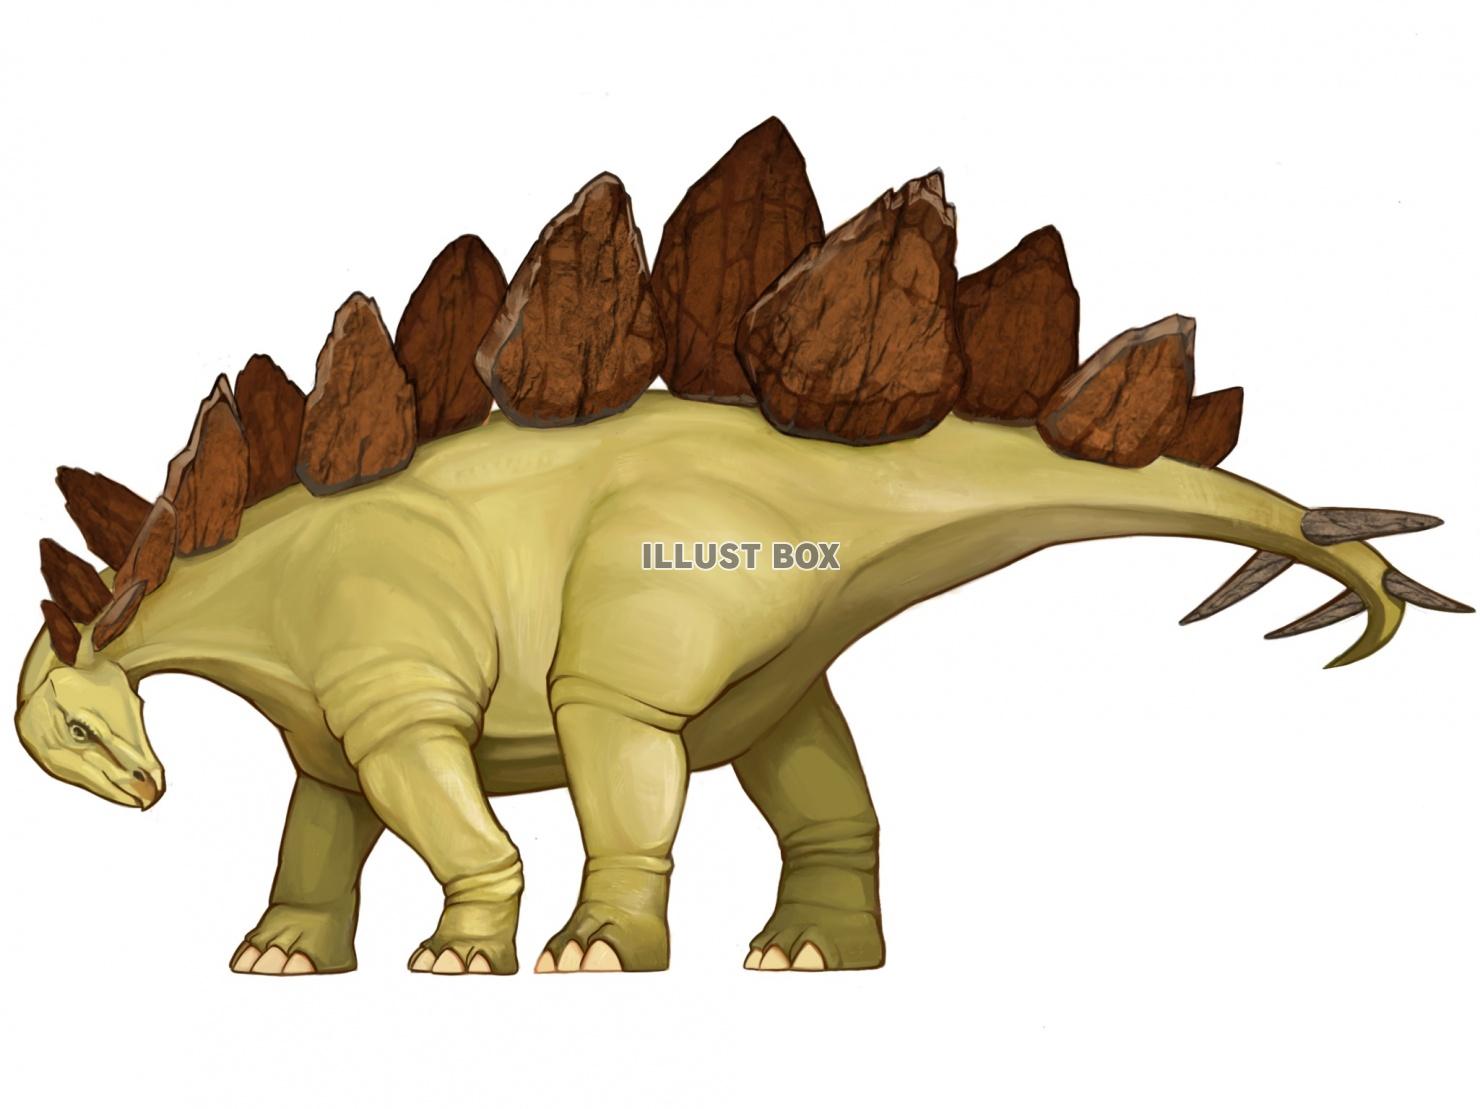 恐竜・ステゴサウルス